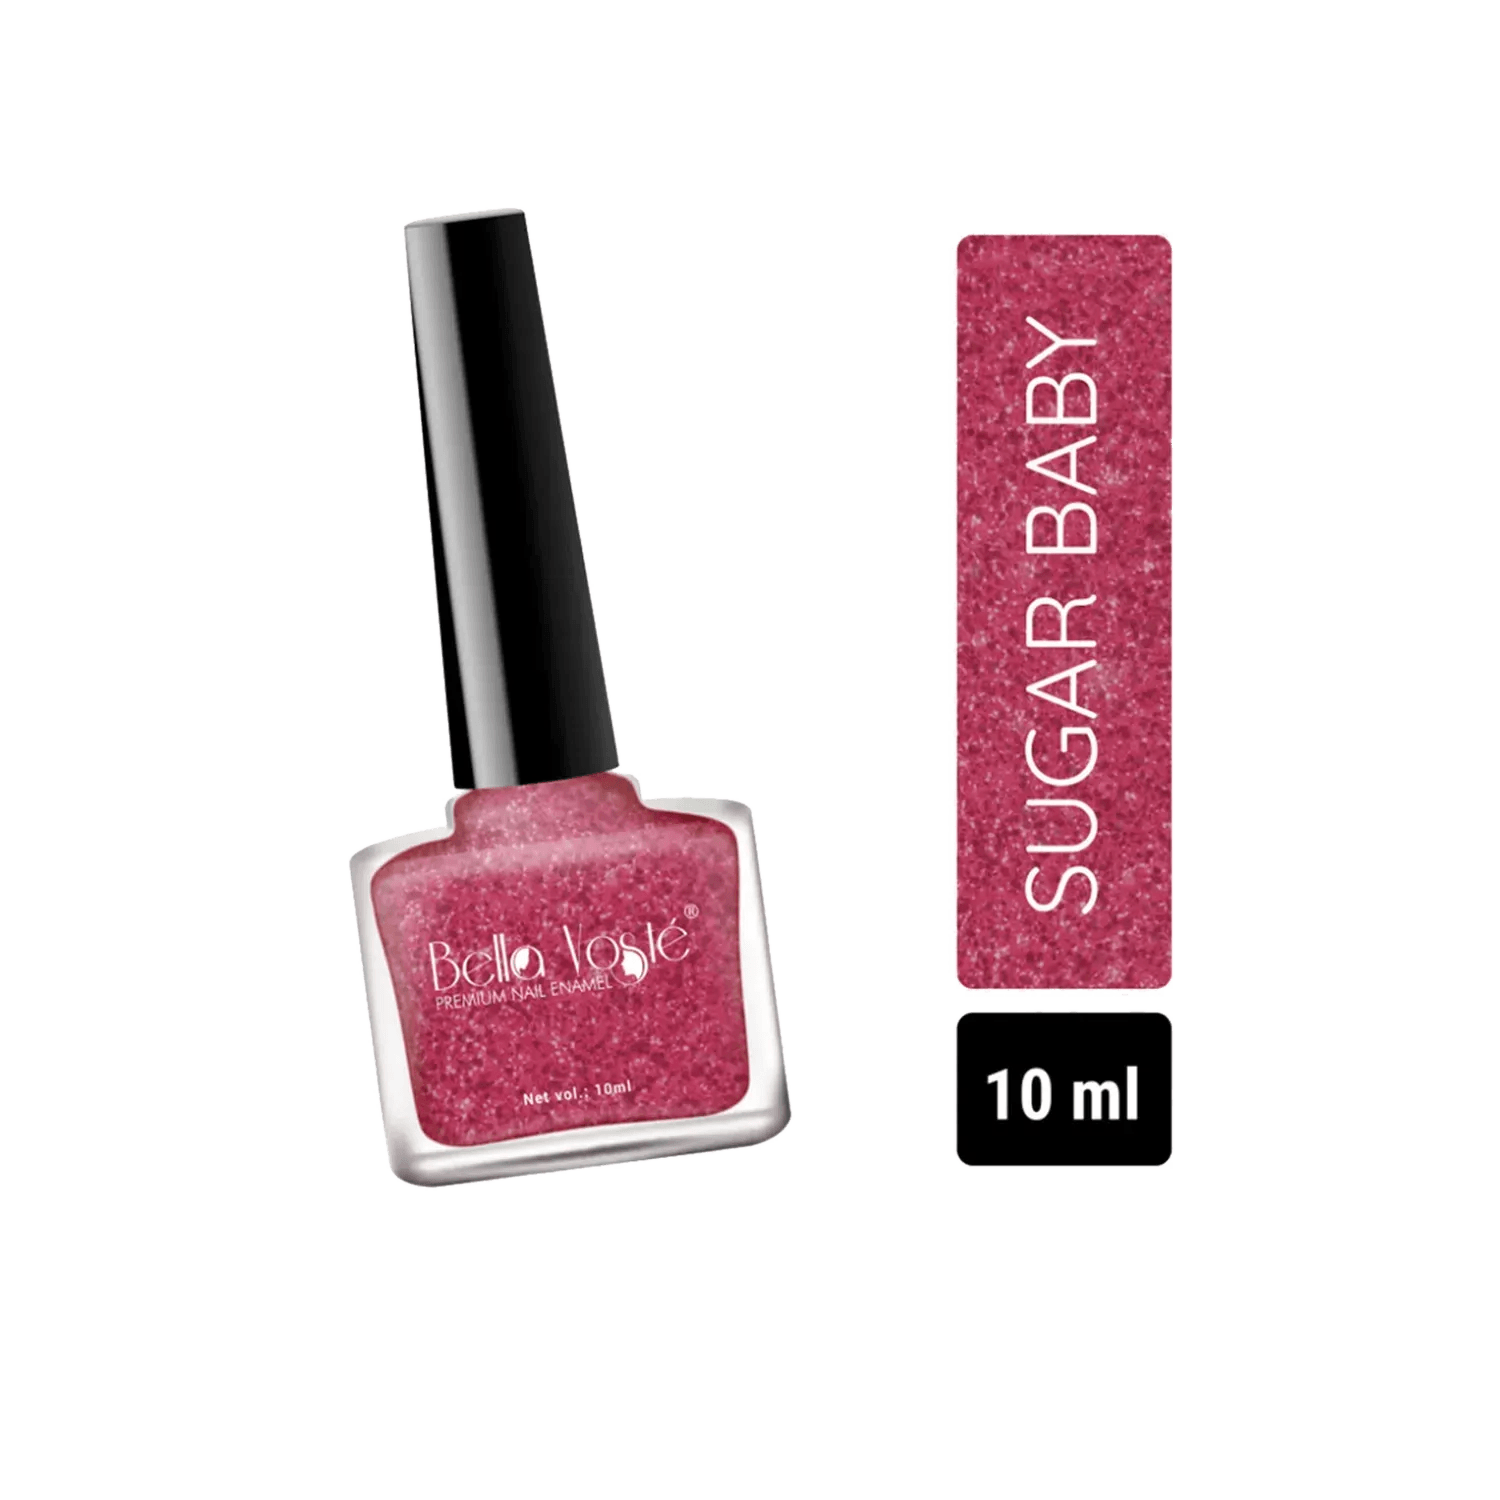 Bella Voste | Bella Voste Sugar Baby Nail Paint - Shade 367 (10ml)